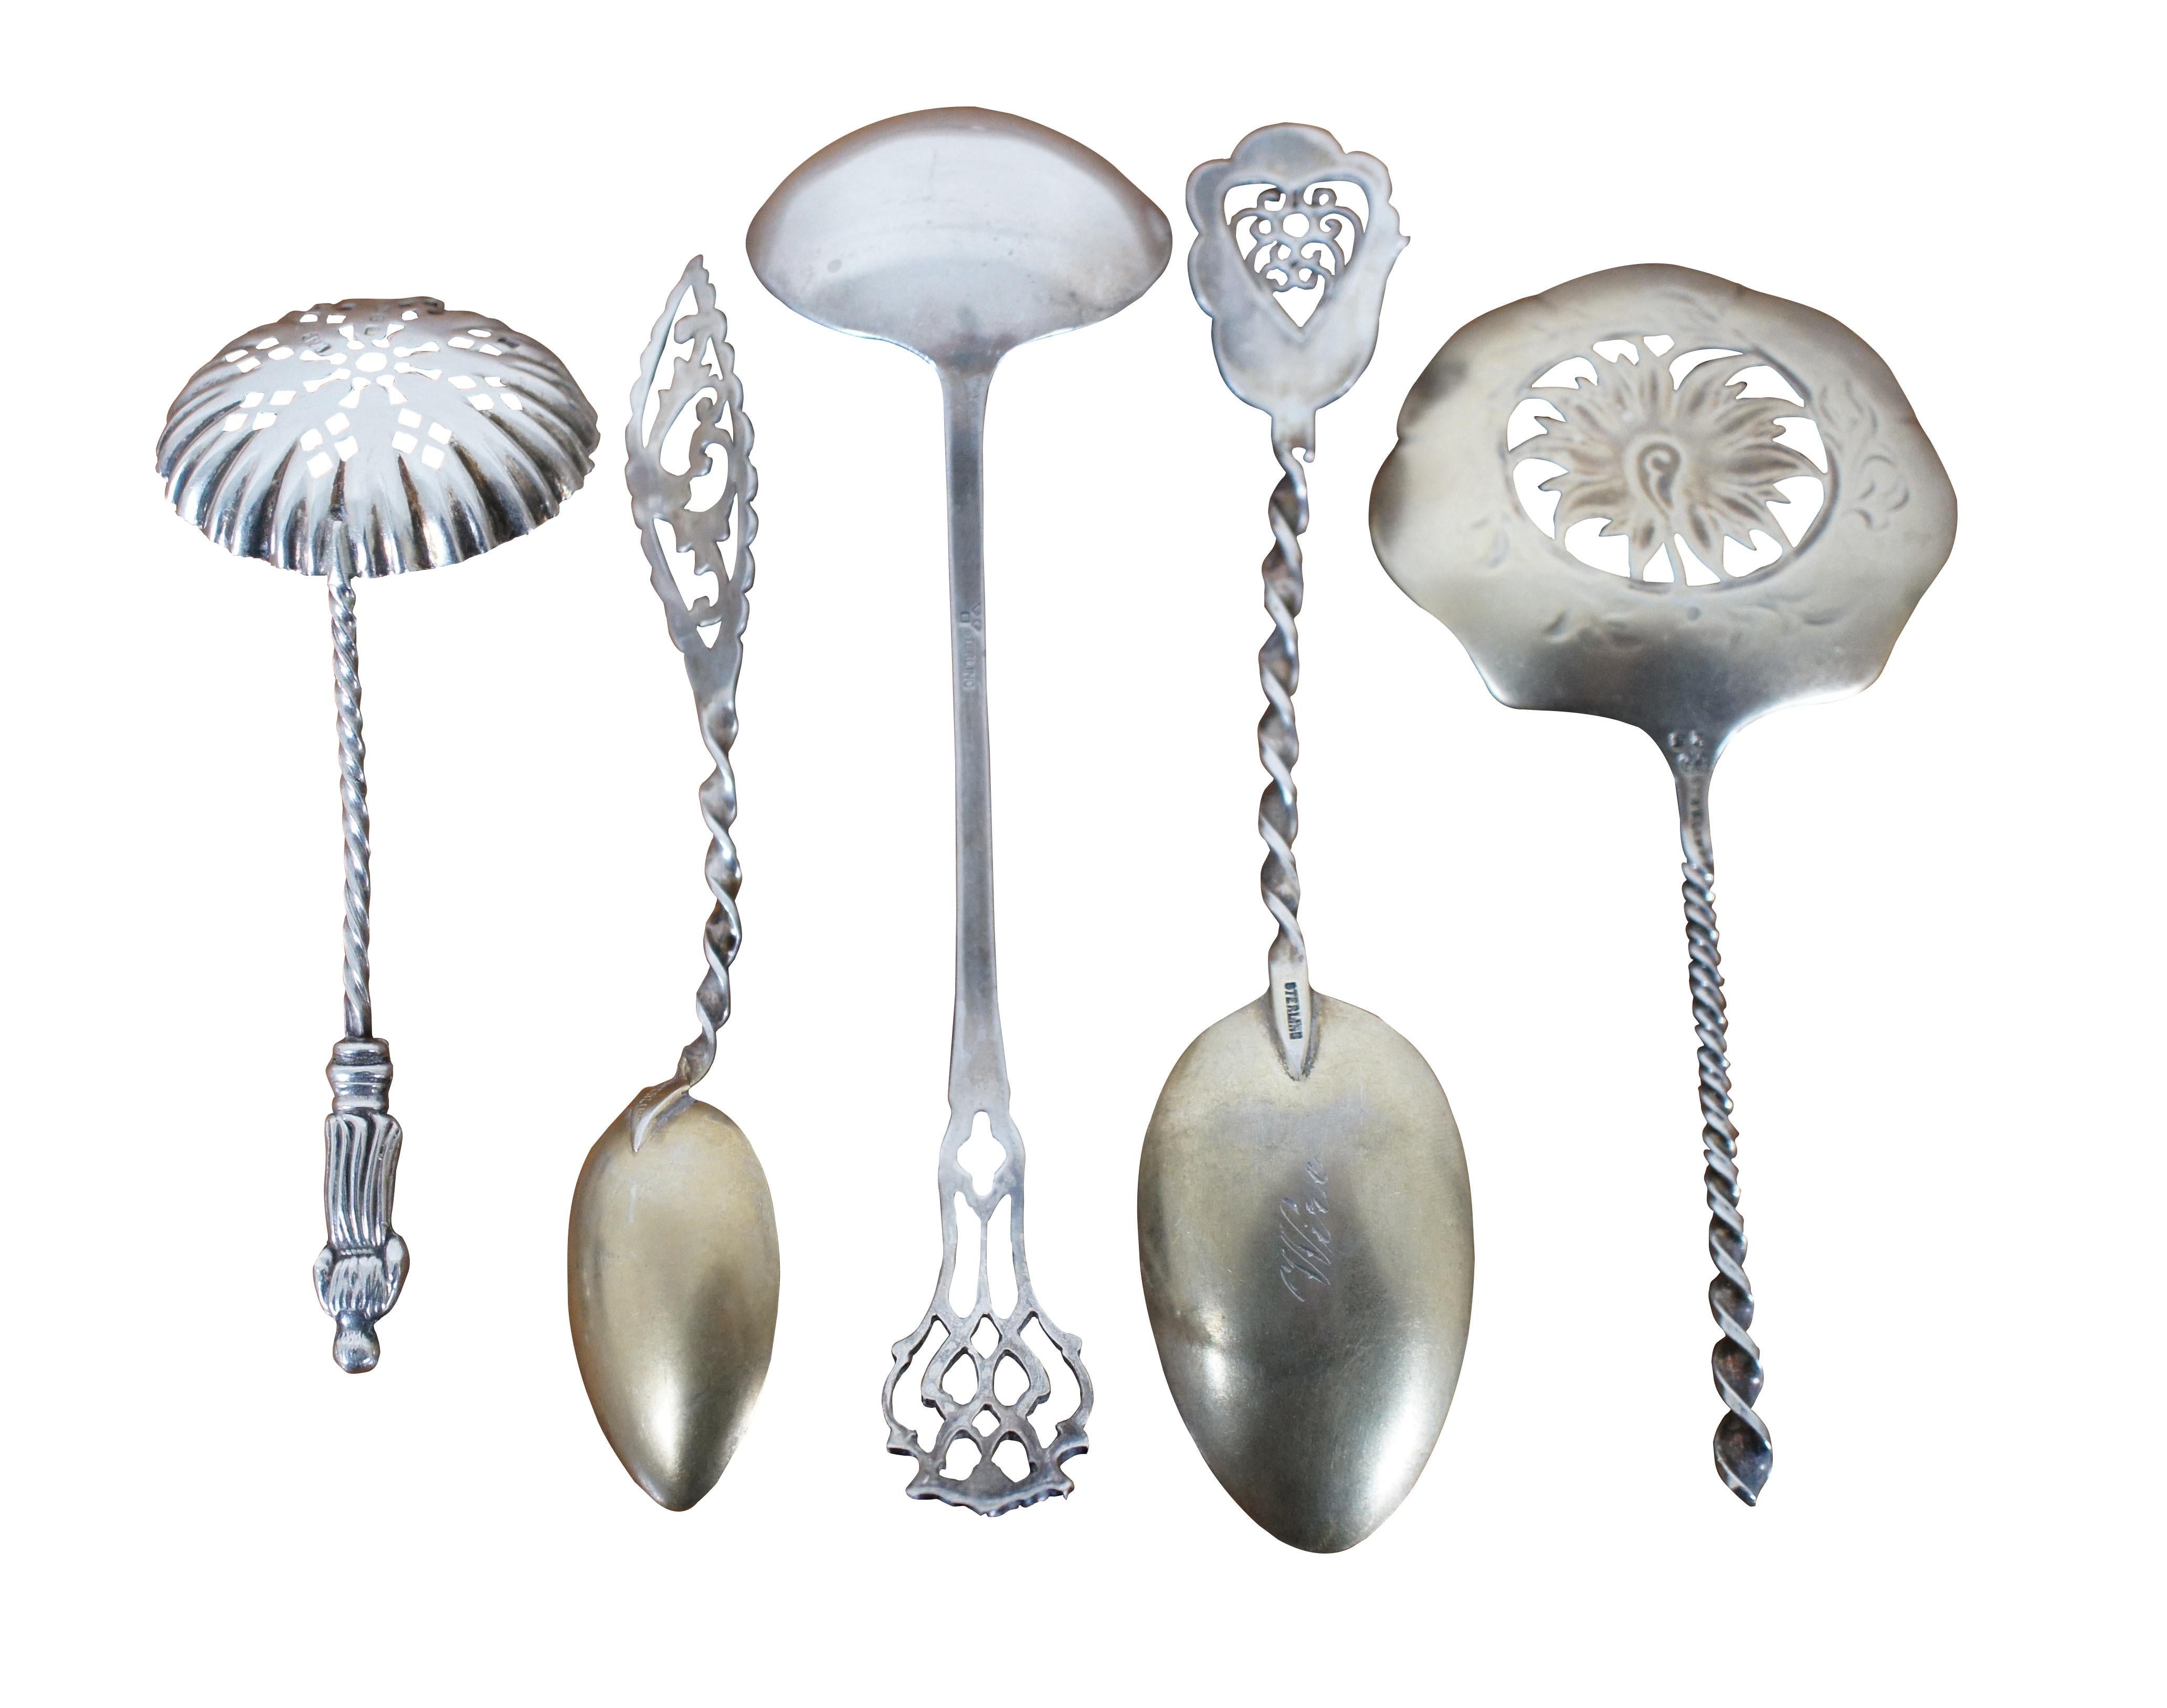 antique silver ladle spoon